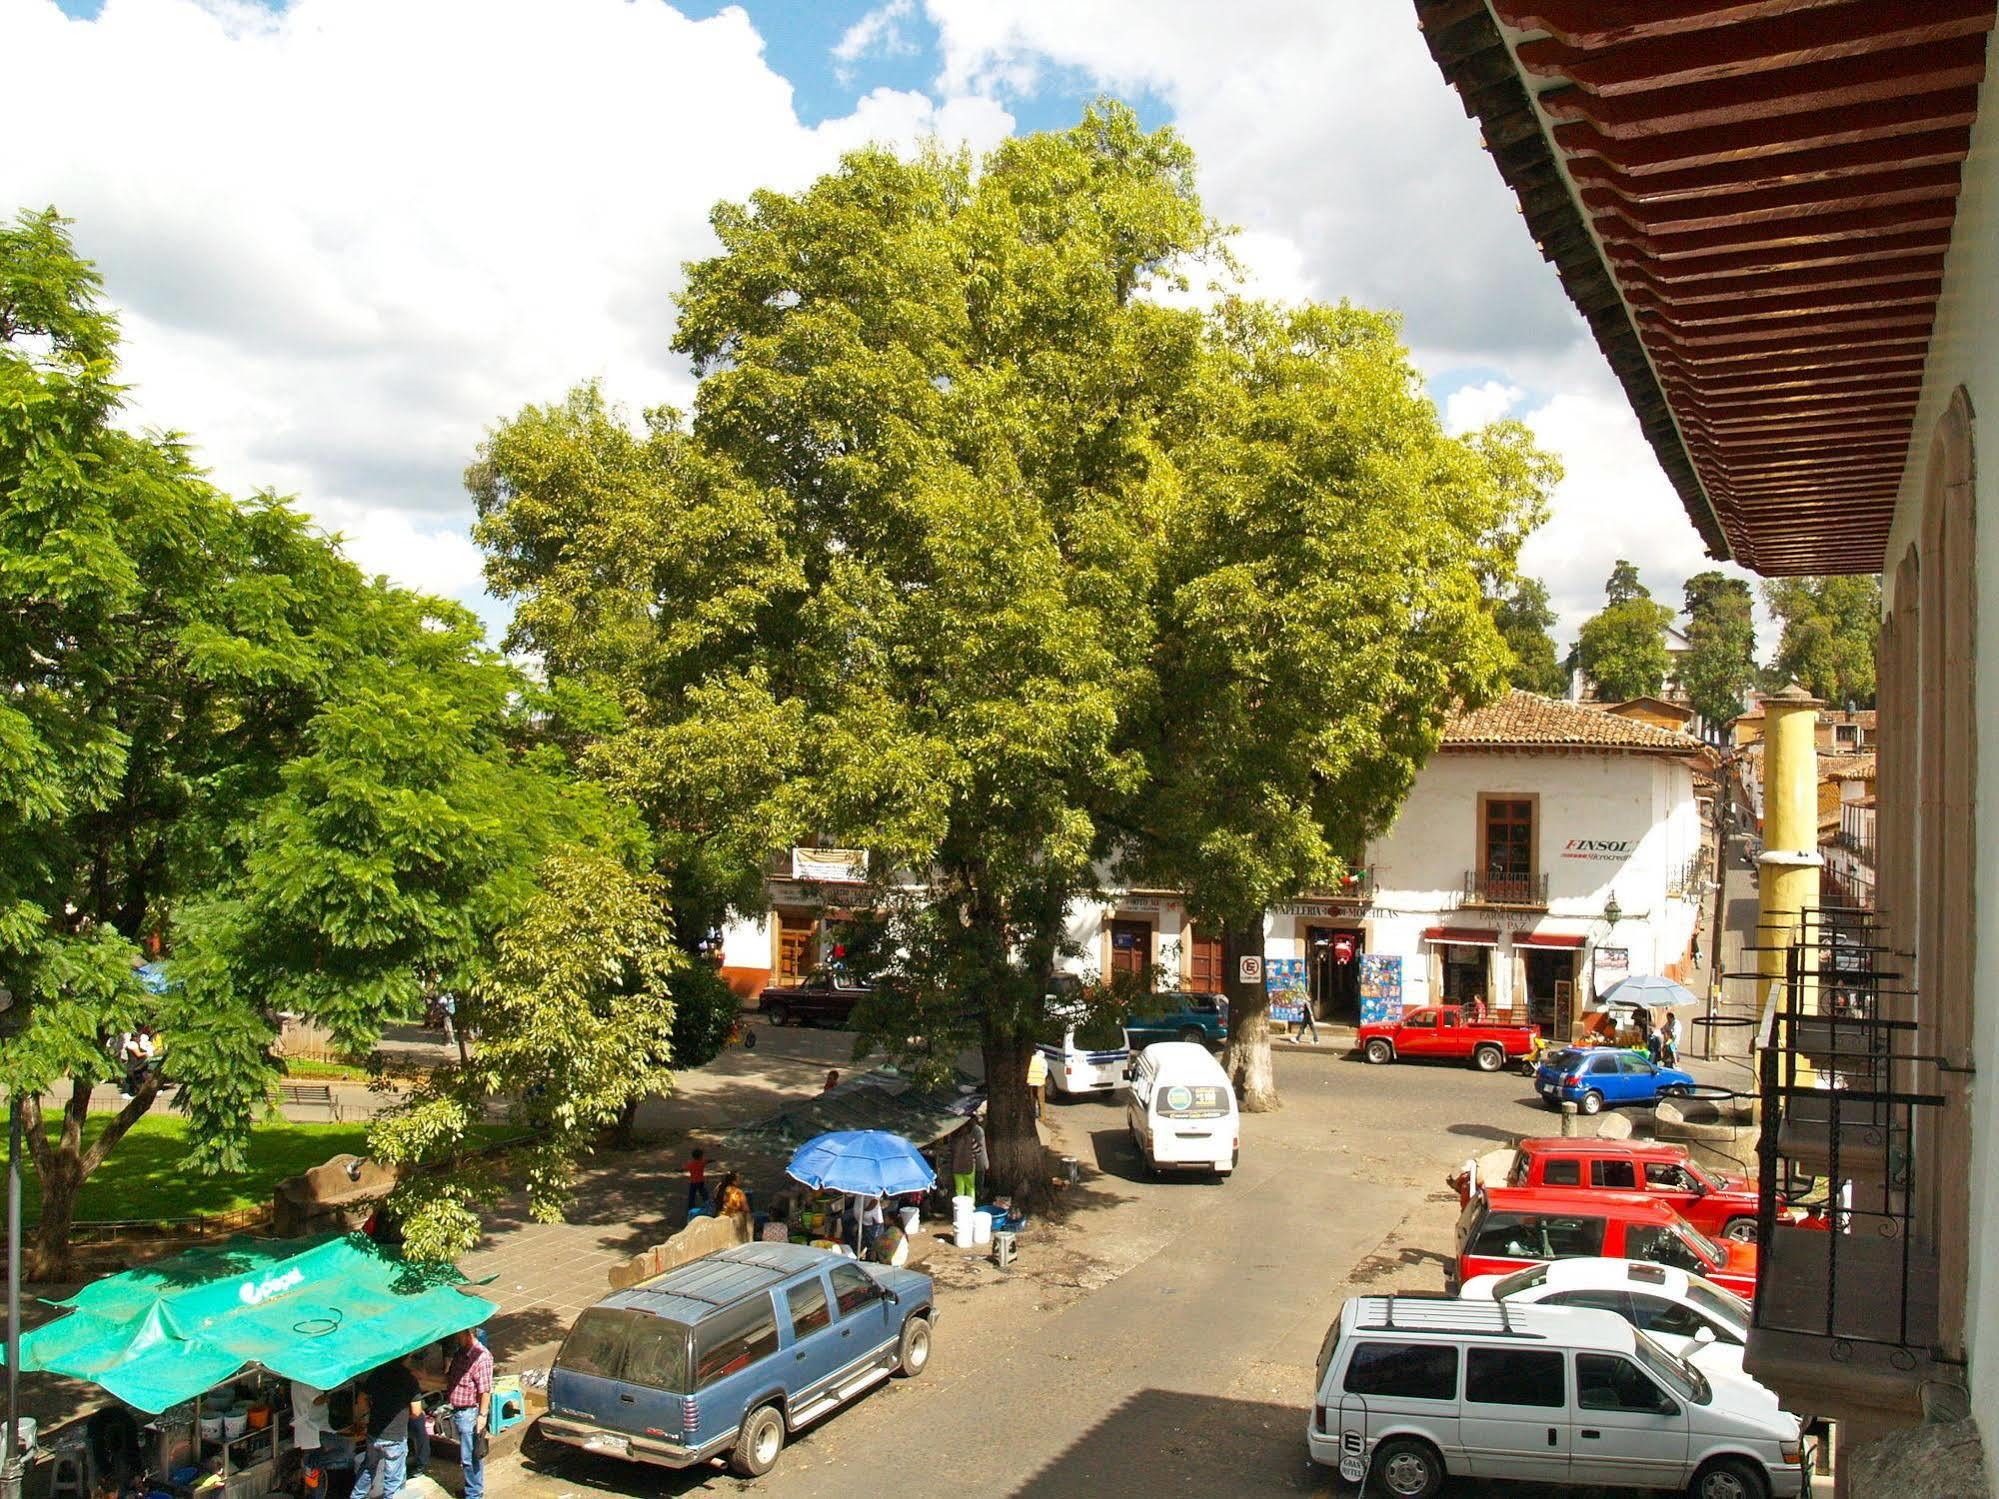 Hotel Casa del Refugio Pátzcuaro Exterior foto